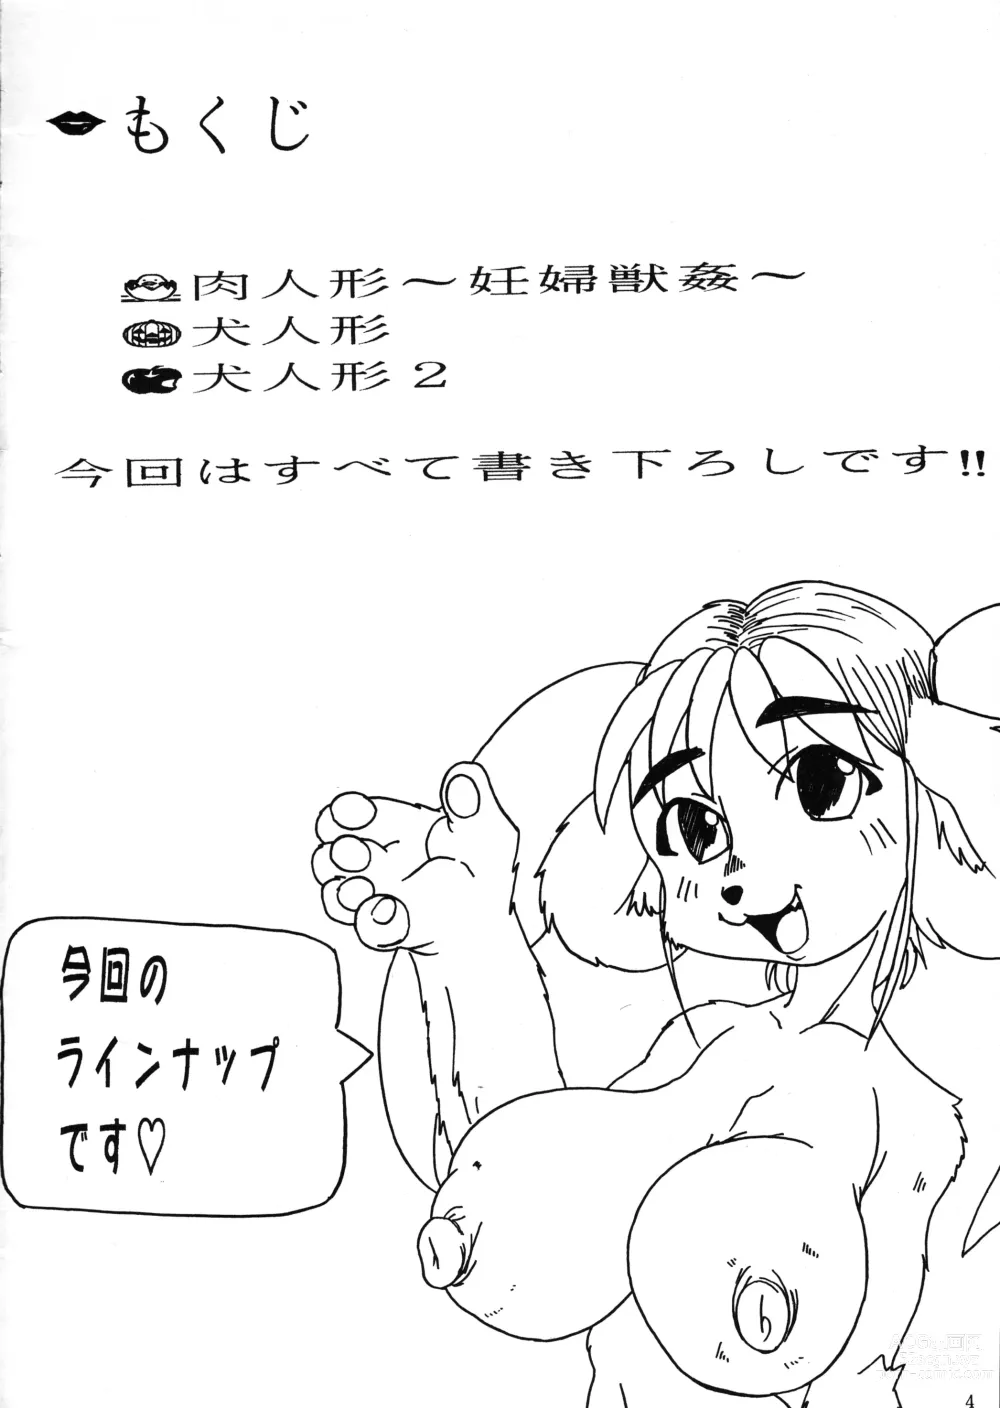 Page 4 of doujinshi Kyoujyuu